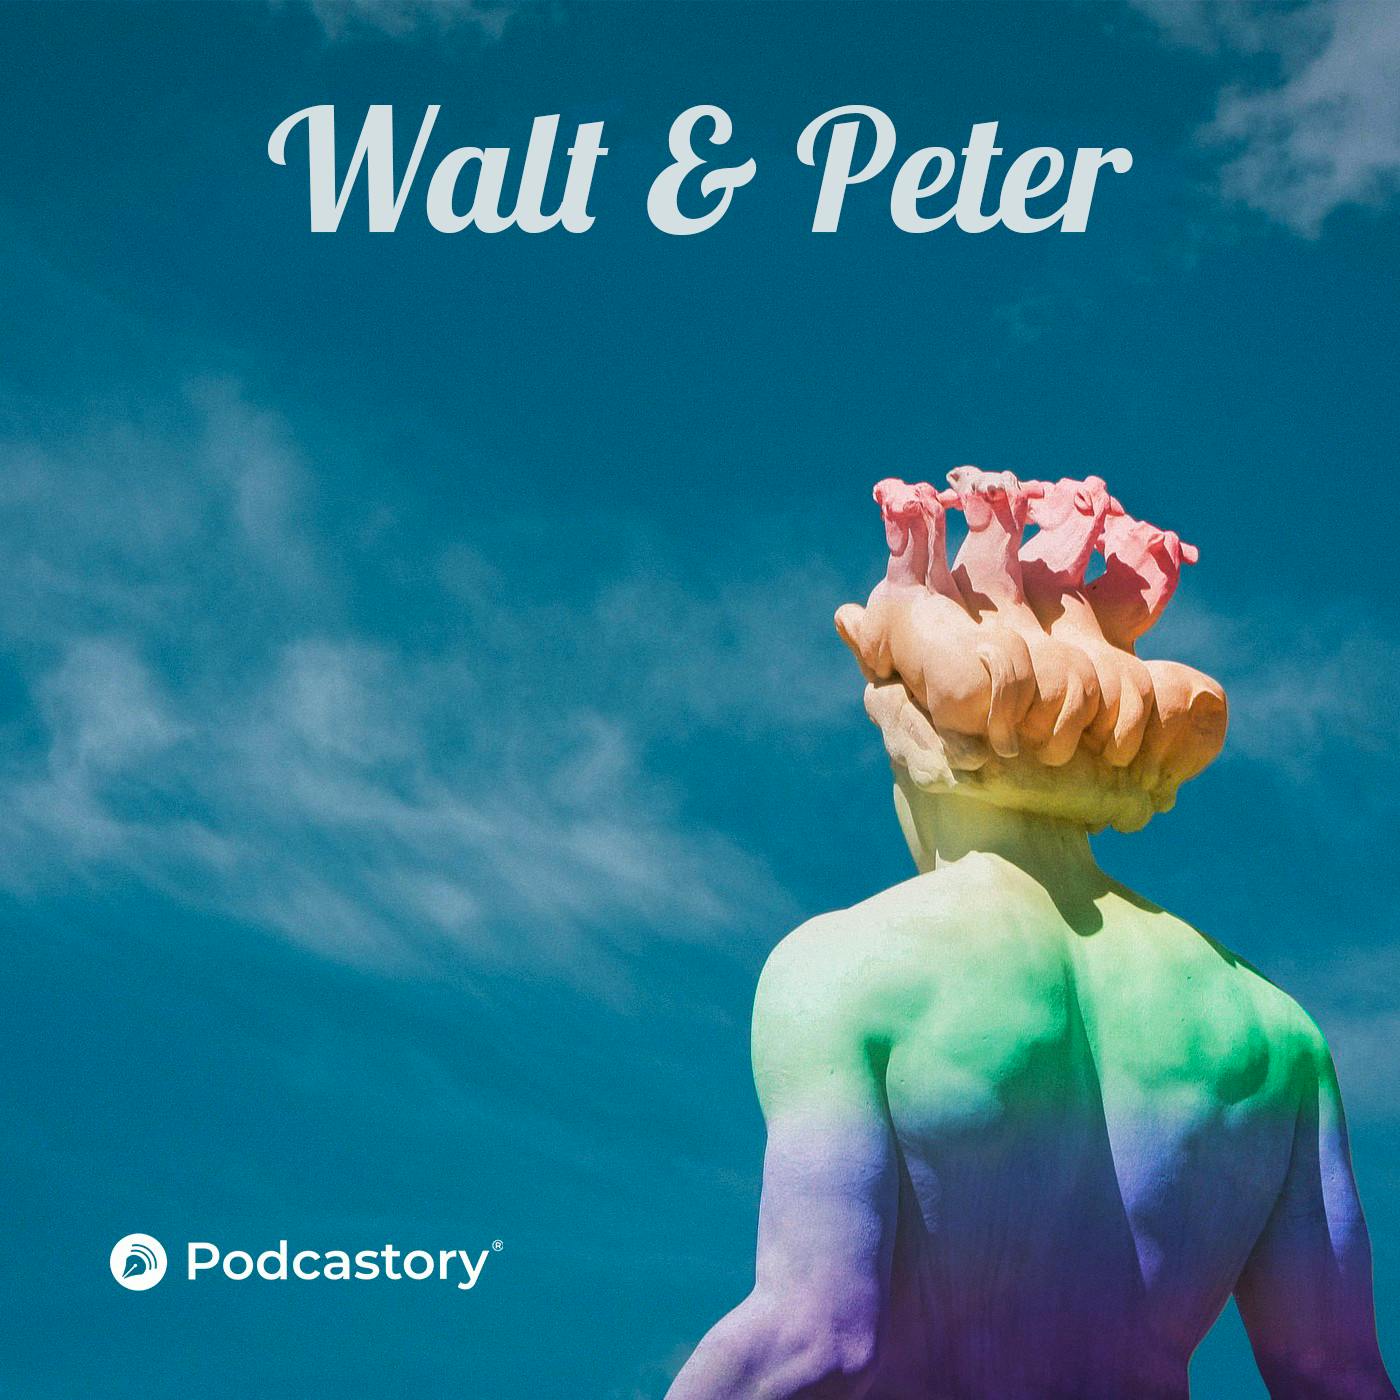 WALT & PETER